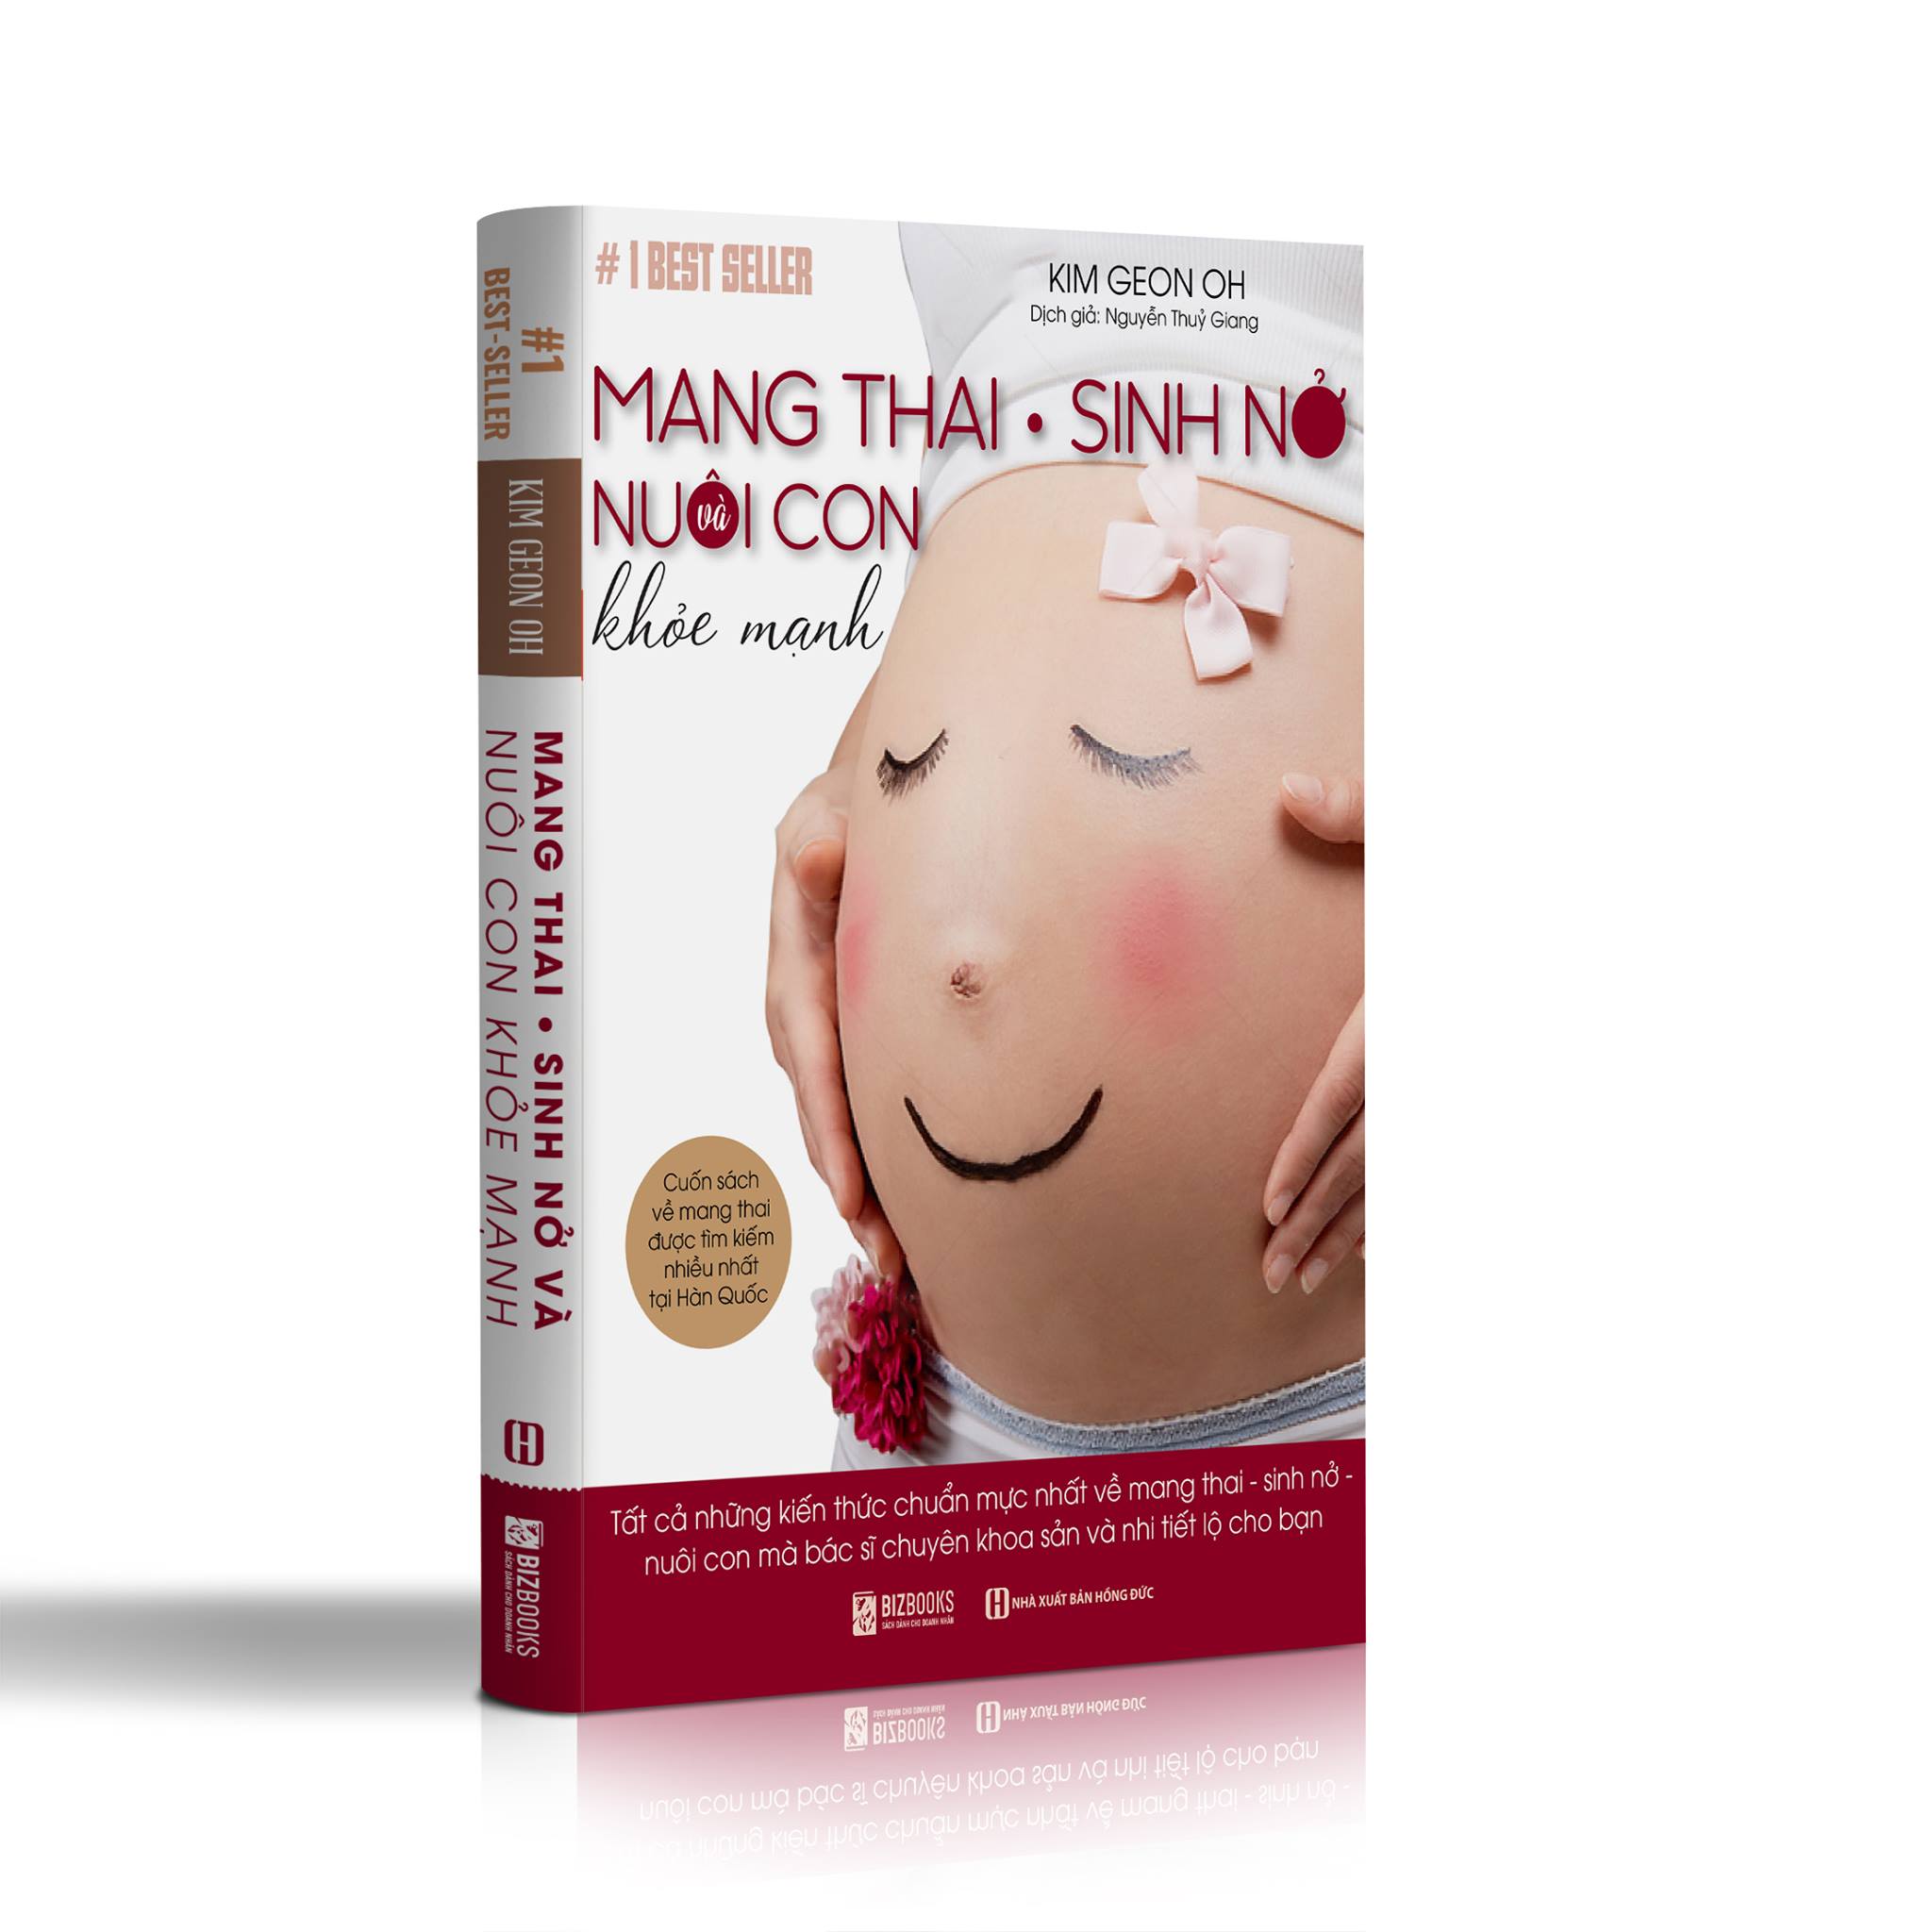 Mang Thai Sinh Nở Và Nuôi Con Khỏe Mạnh: Cuốn sách về mang thai được